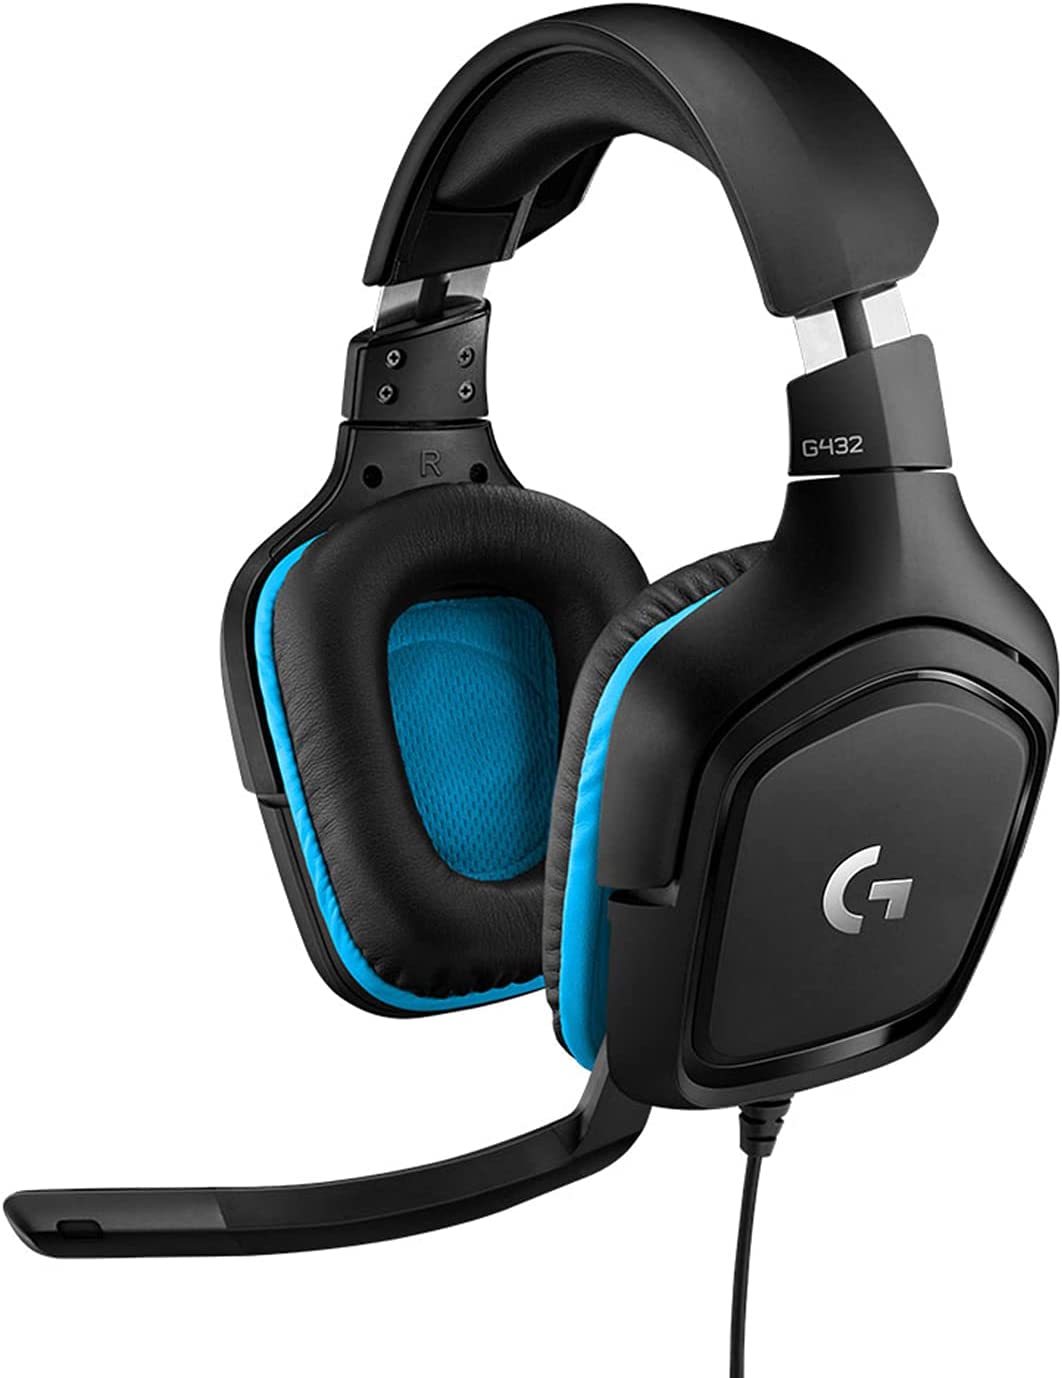 (G1) Logitech G432 kabelgebundenes Gaming-Headset, 7.1 Surround Sound